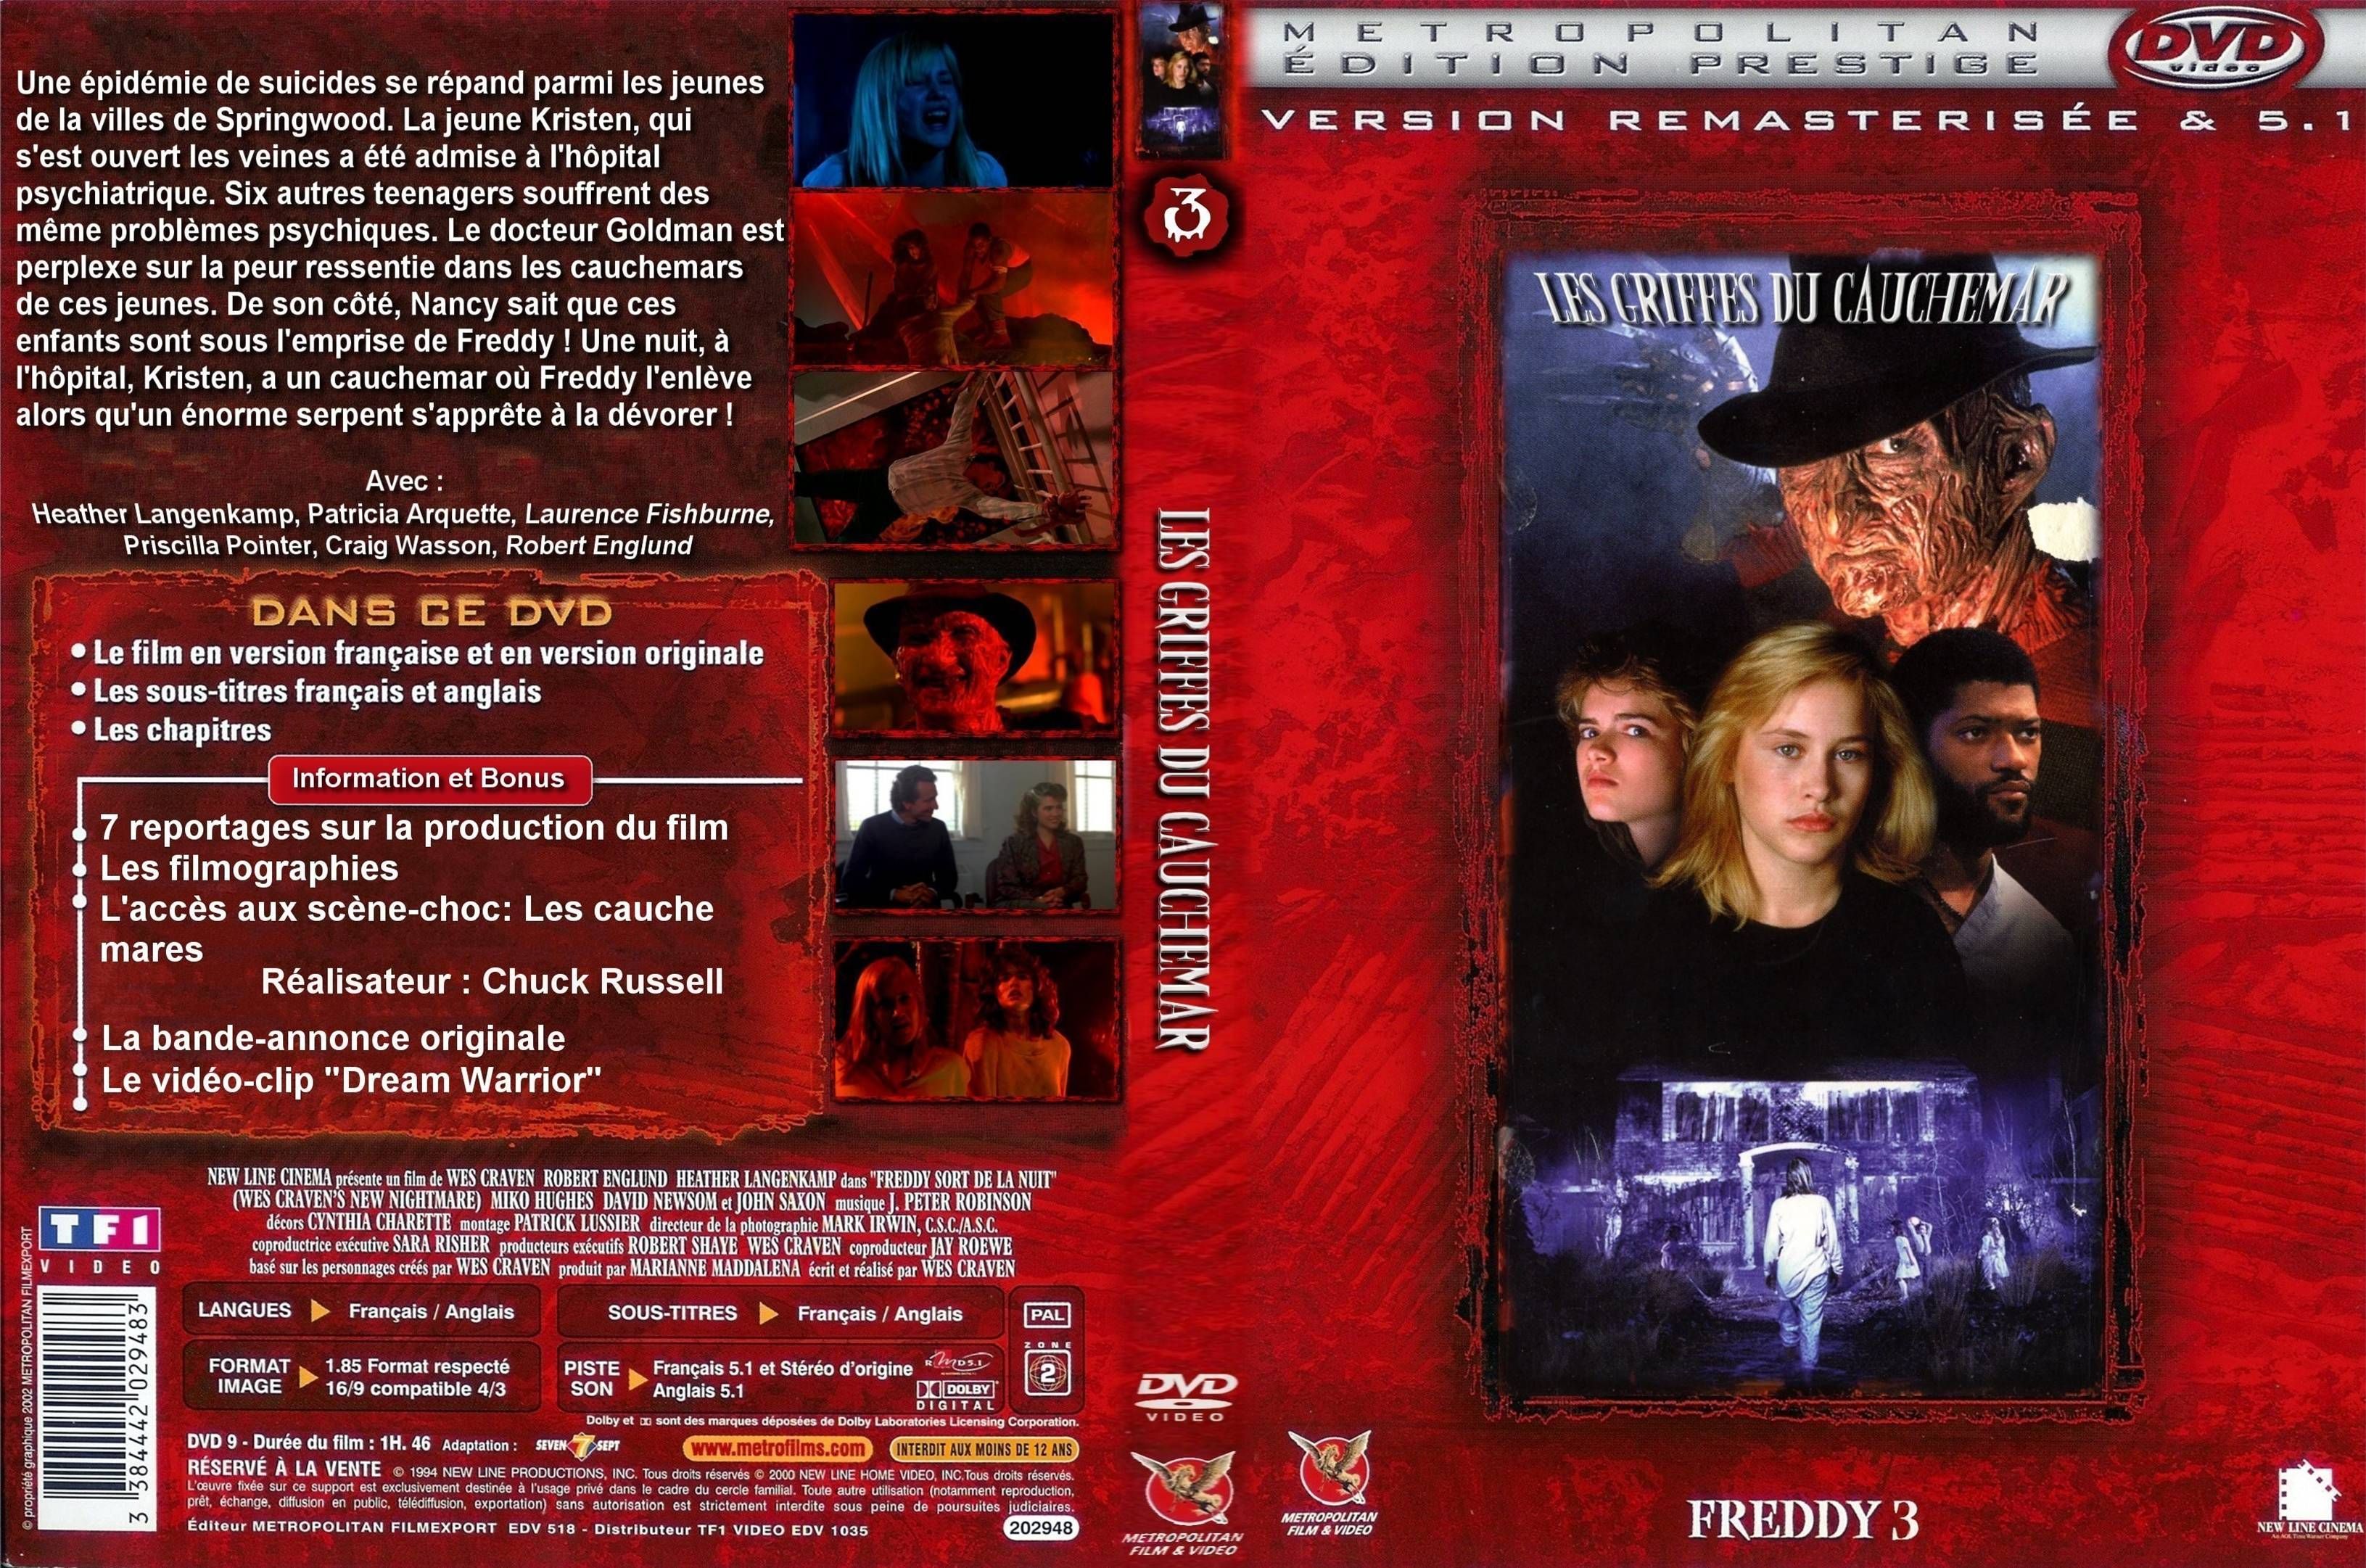 Jaquette DVD Freddy 3 Les griffes du cauchemar